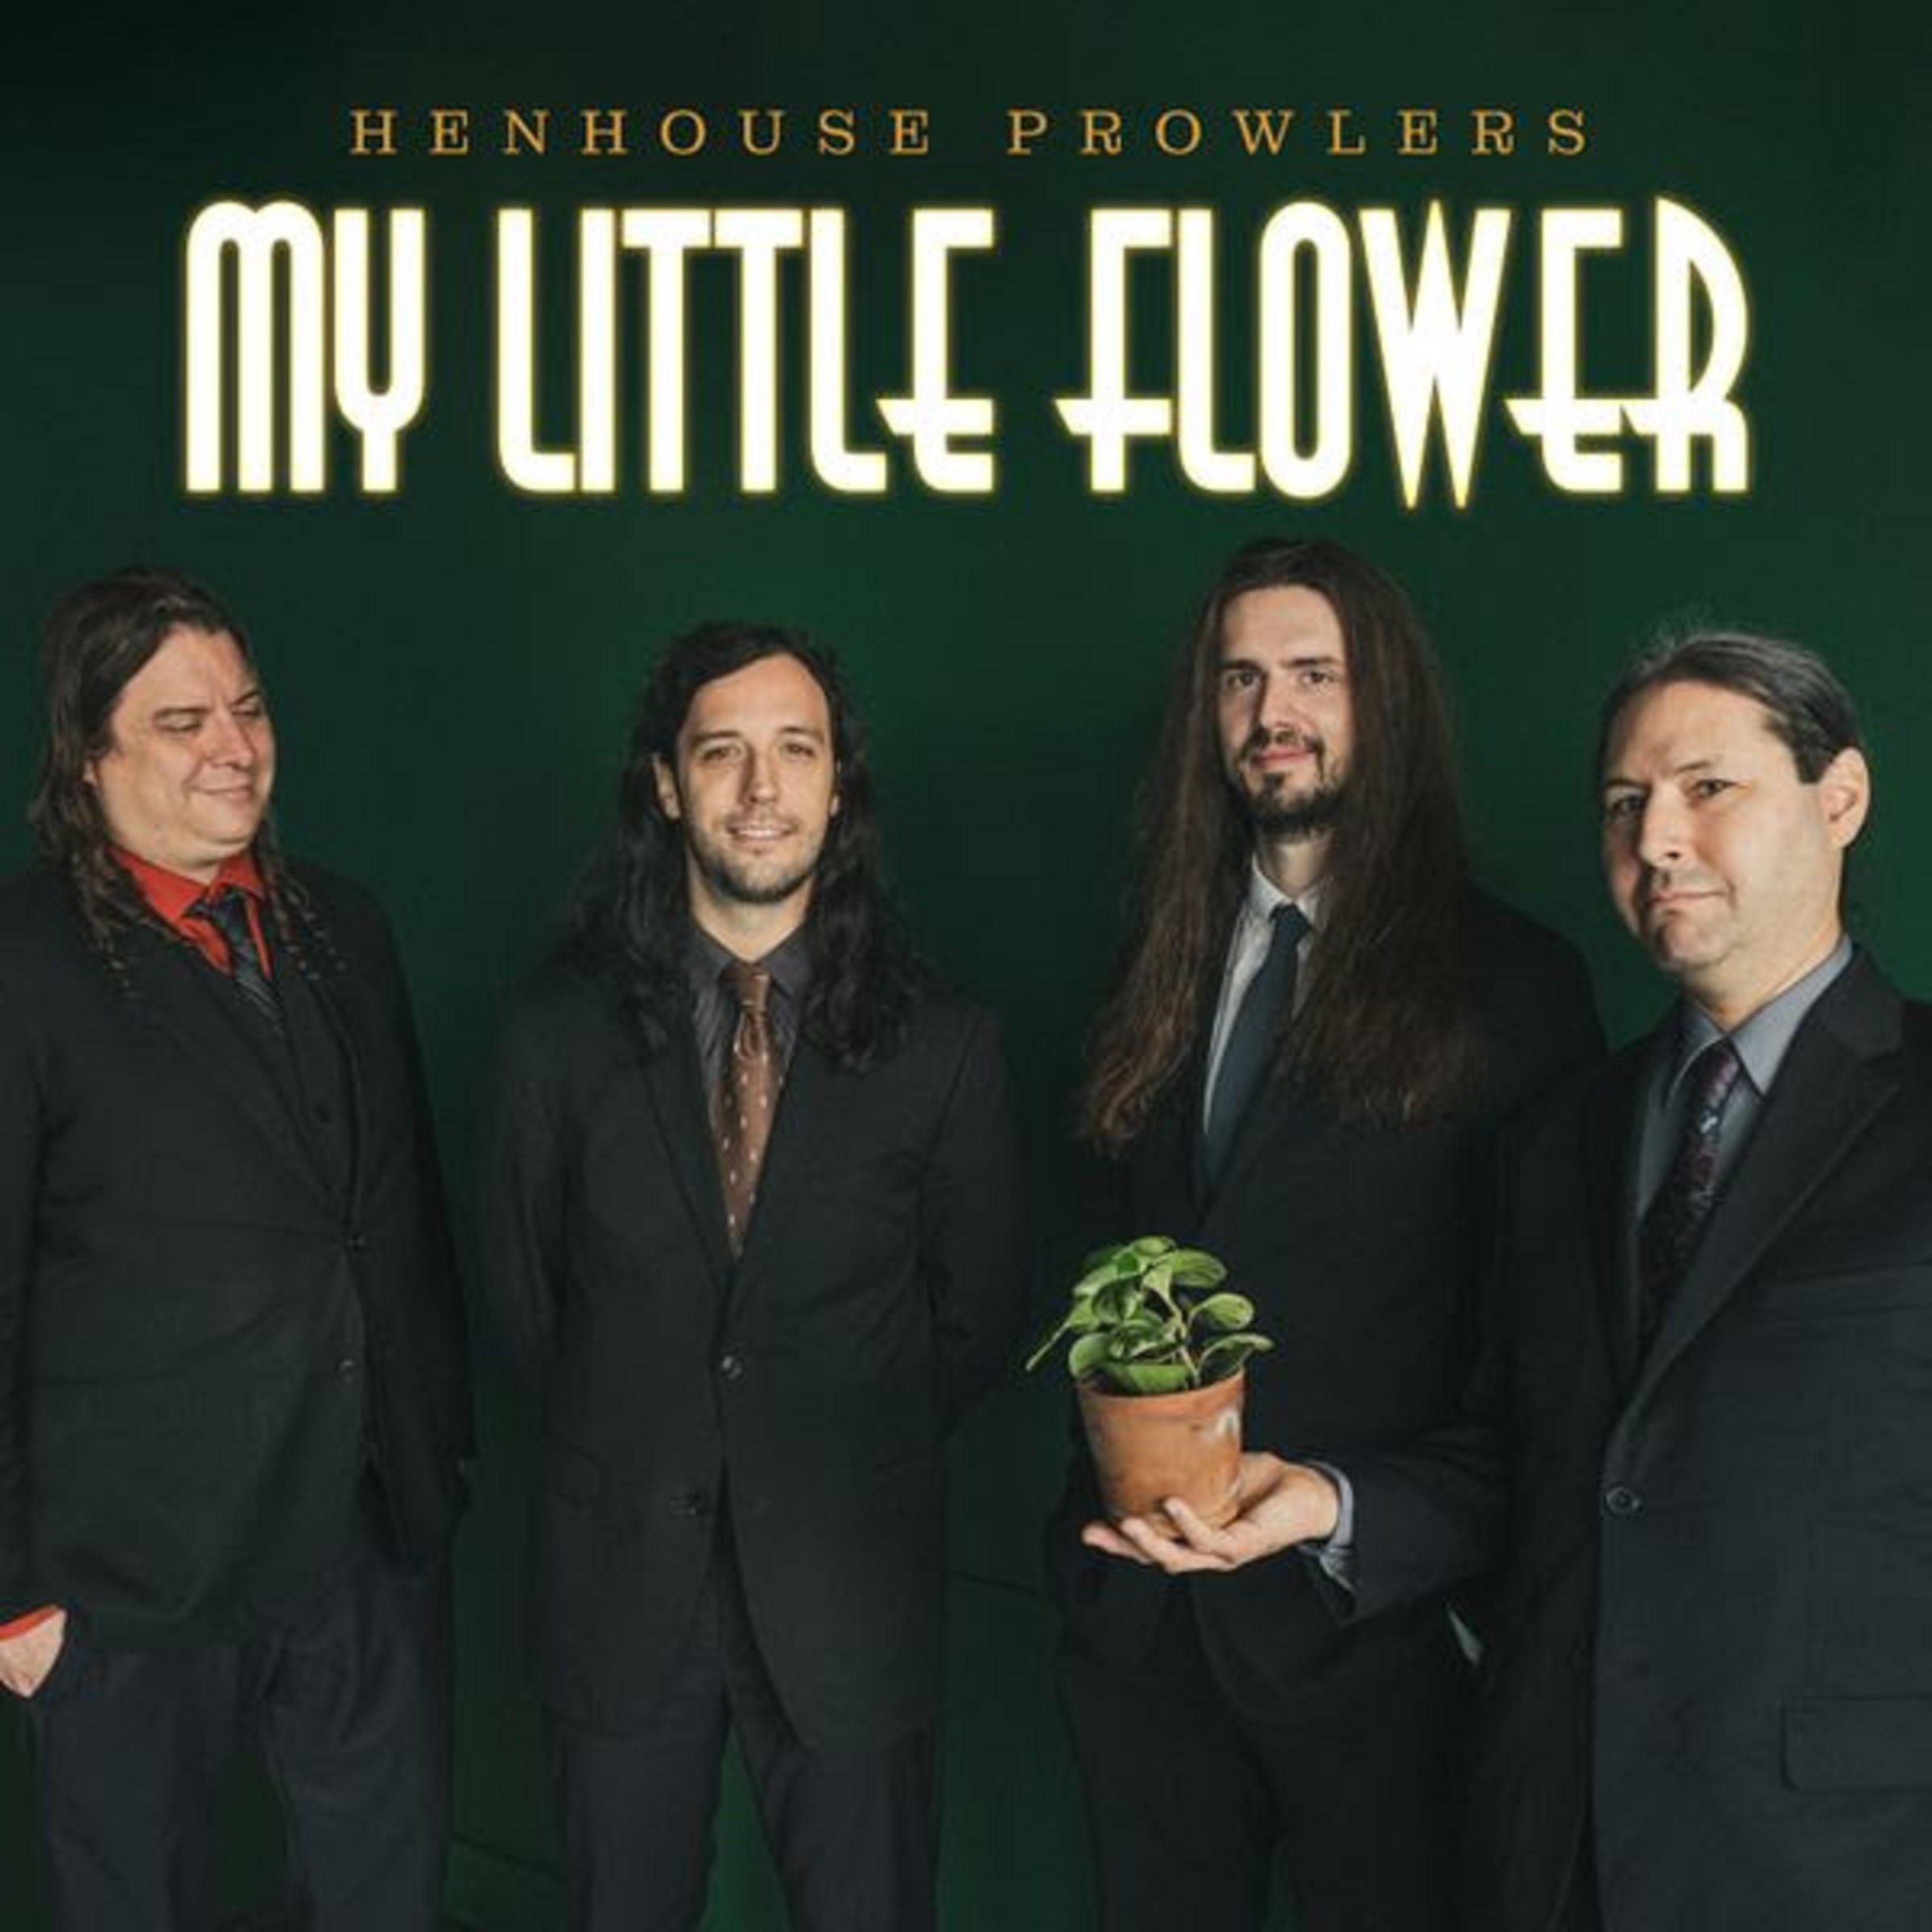 Henhouse Prowlers release new single & video, "My Little Flower"